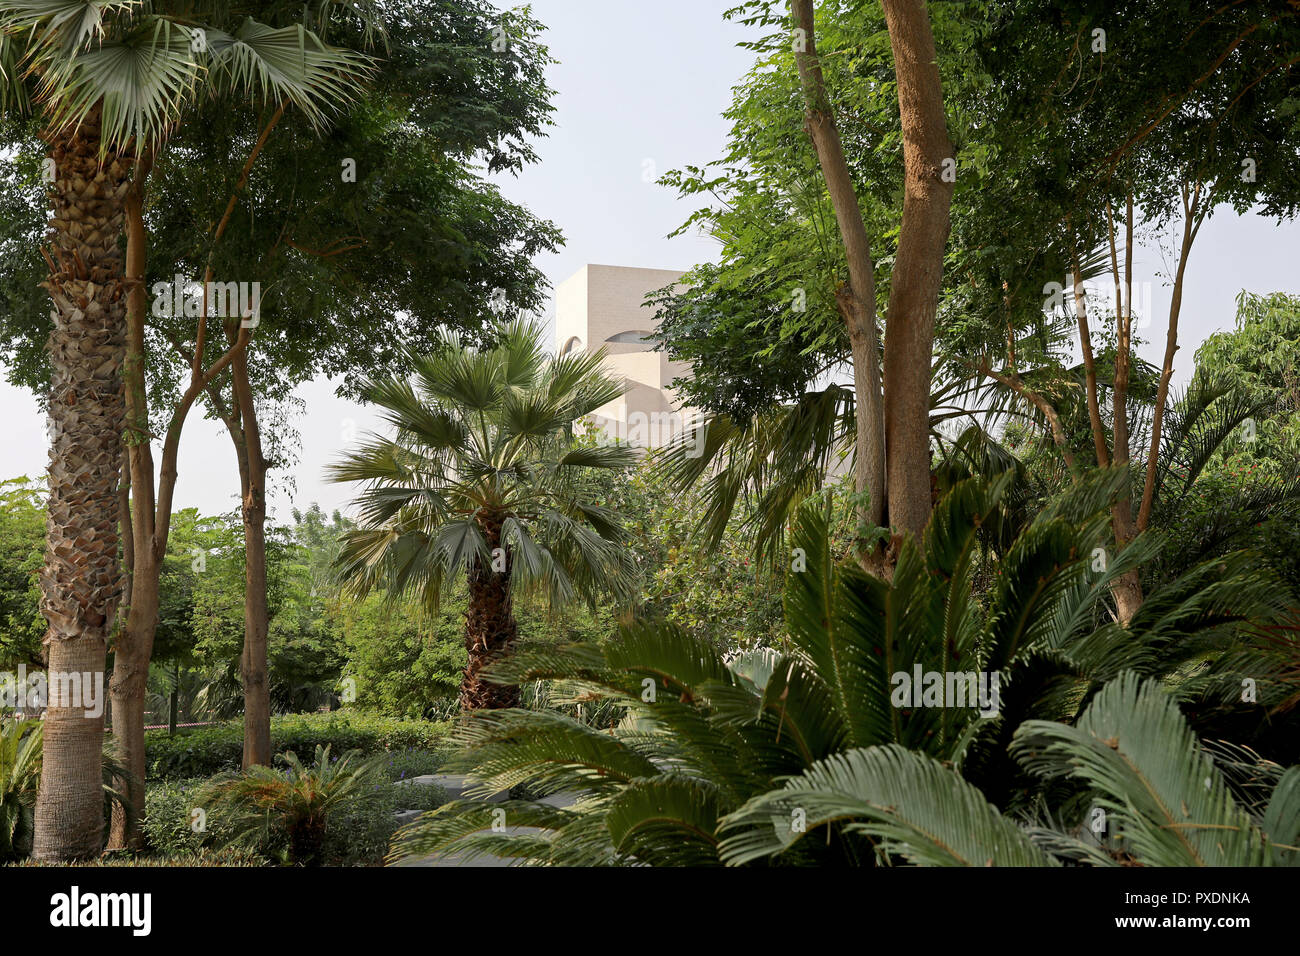 Doha/Katar - Oktober 10, 2018: Die markante Form des Museum für Islamische Kunst in Doha, Katar durch Laub in den angrenzenden Park gesehen. Stockfoto